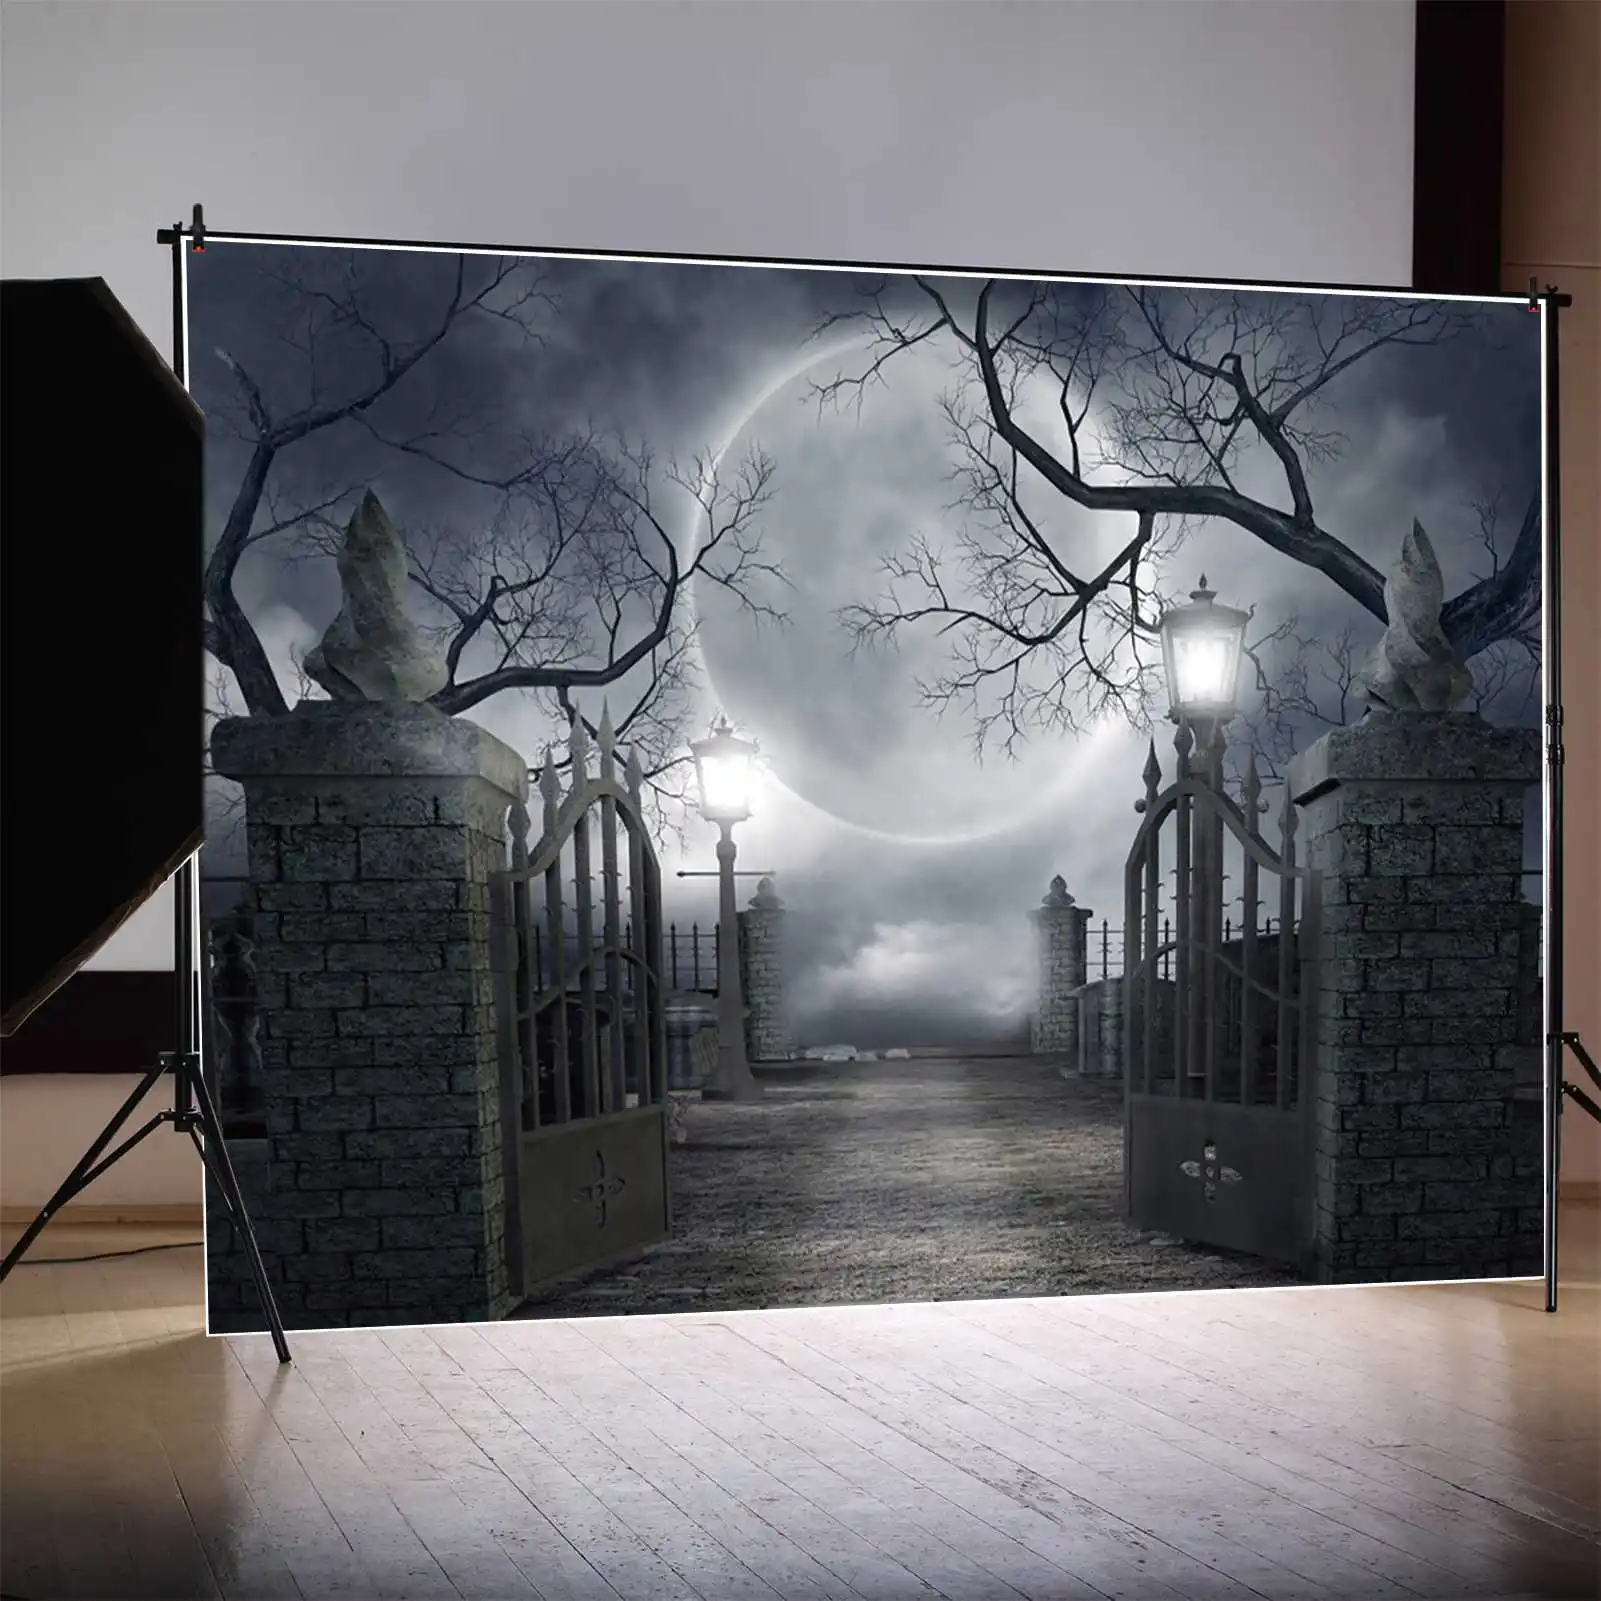 

MOON.QG фотография Фон Хэллоуин кладбище луна ночь ворота пейзаж фотобудка фон пользовательский ребенок дома фотосессия реквизит